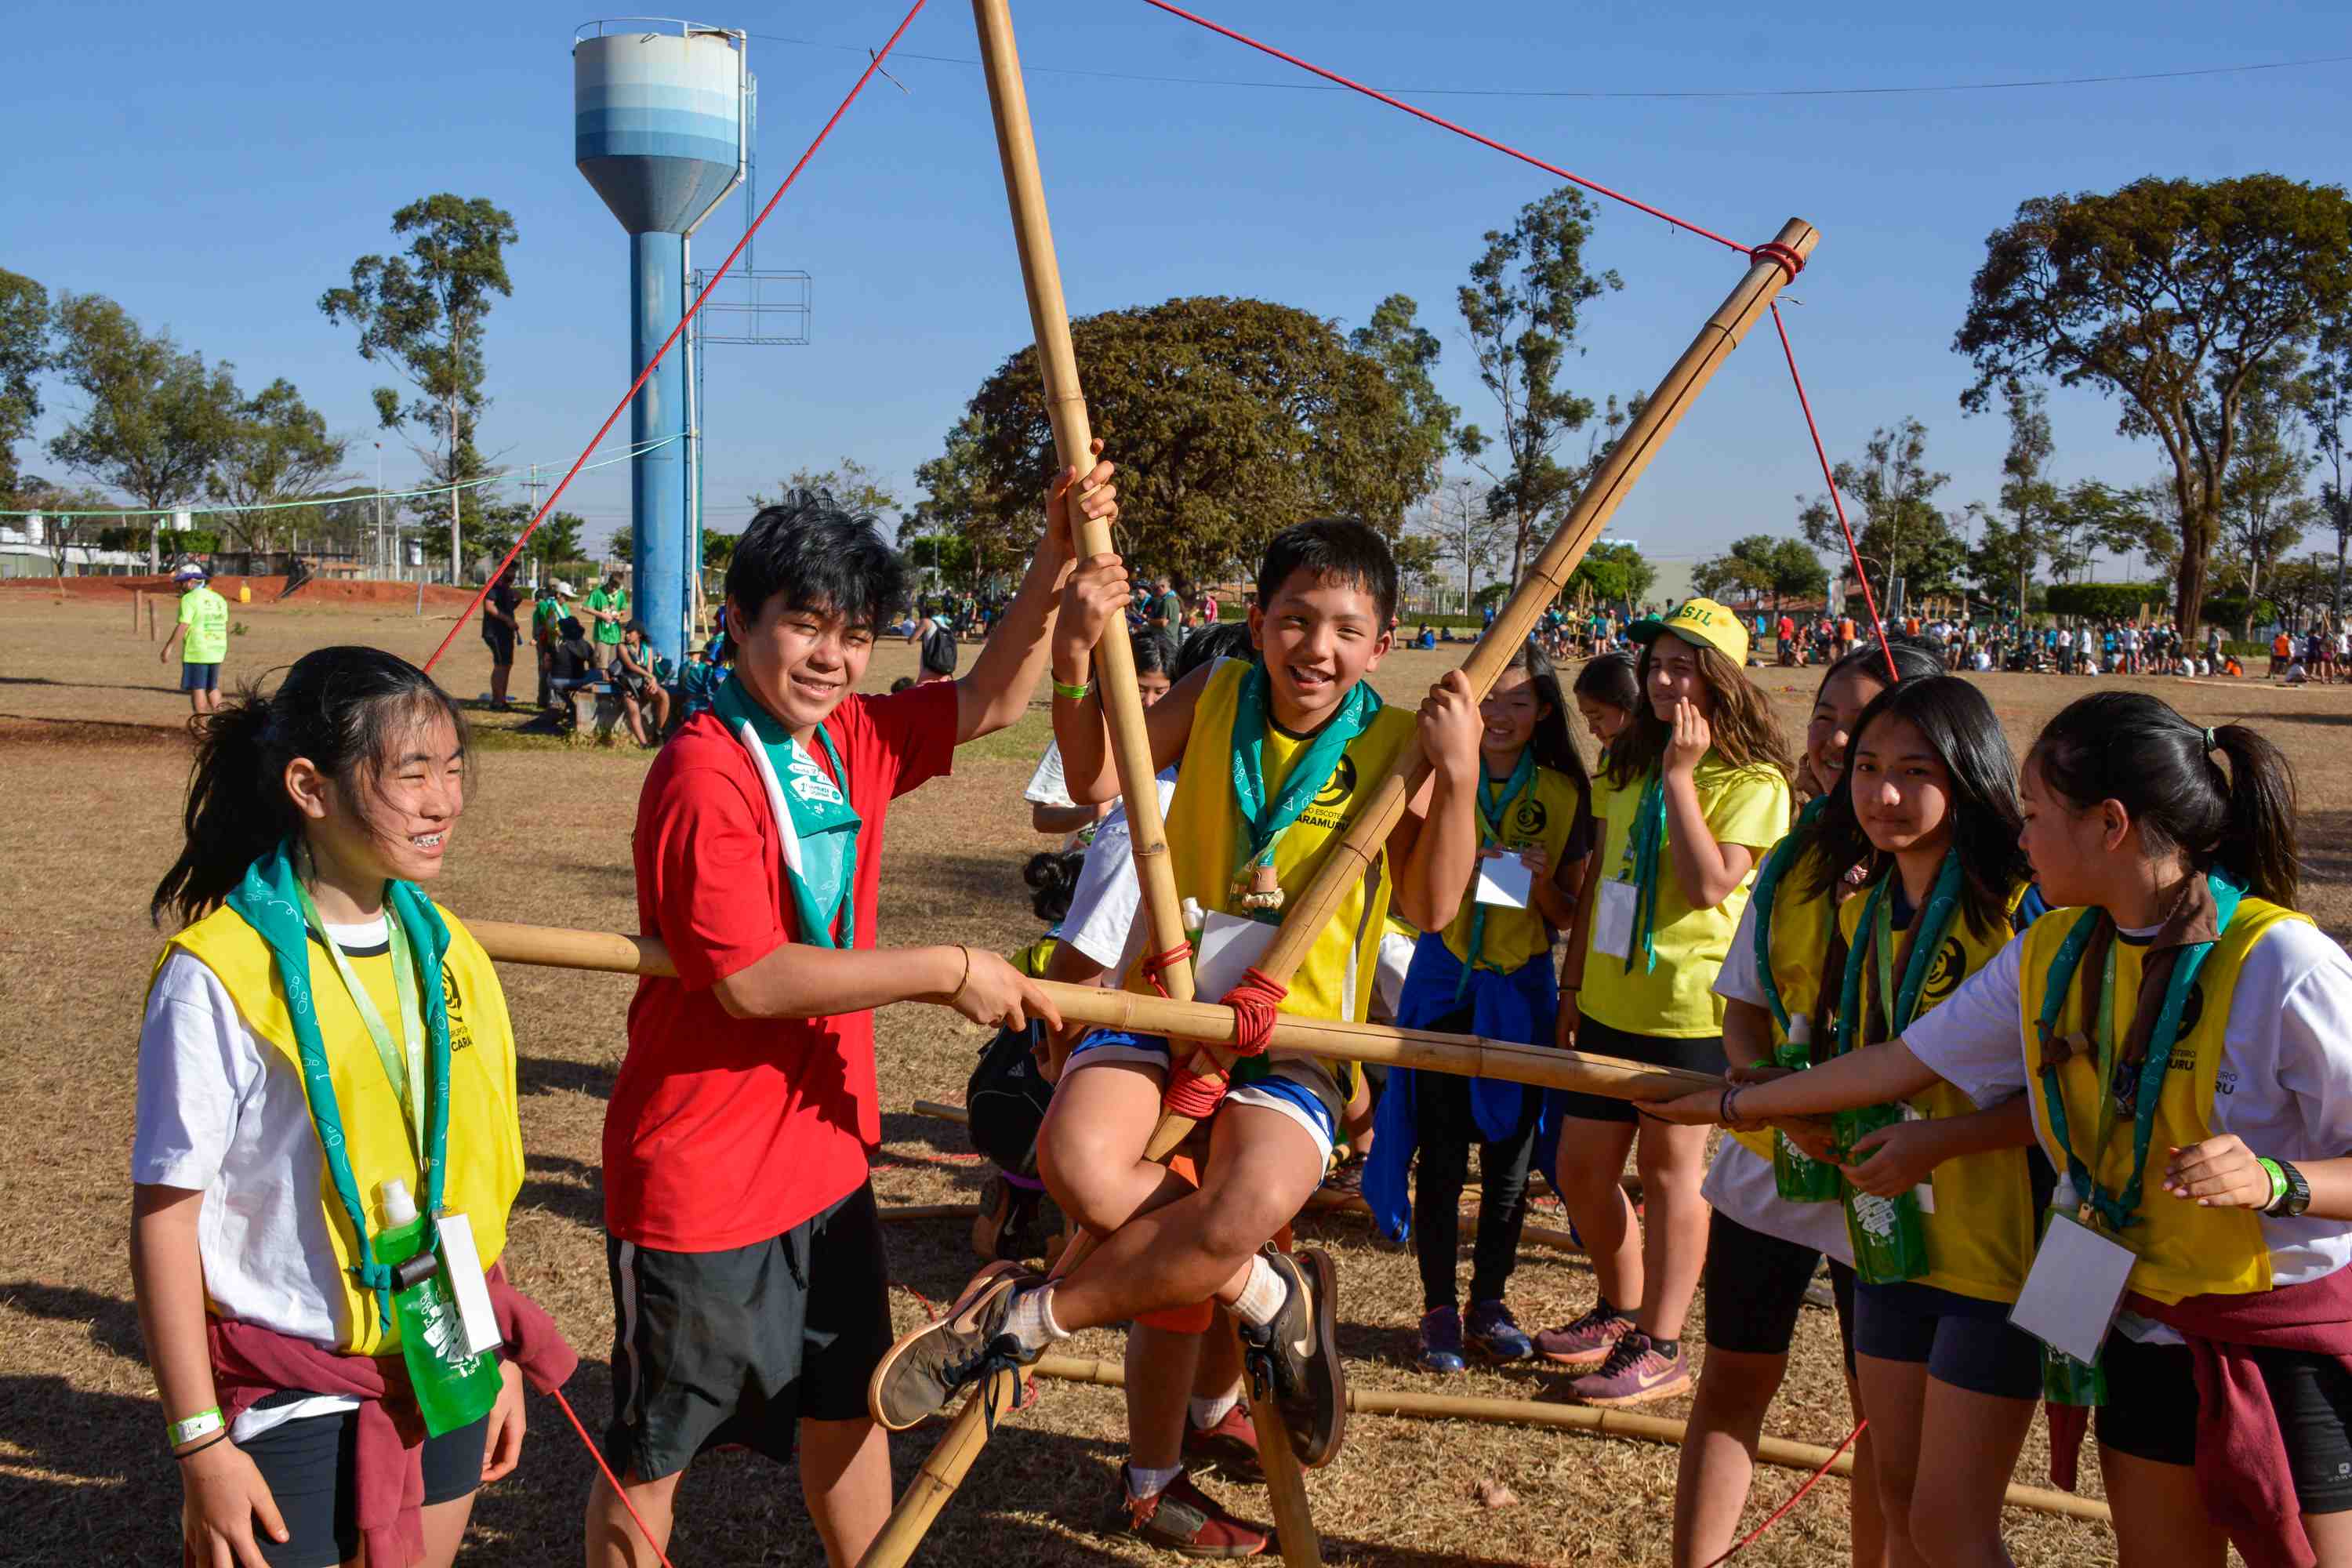 Escoteiros do Brasil comemoram 100 anos com mega acampamento em Barretos